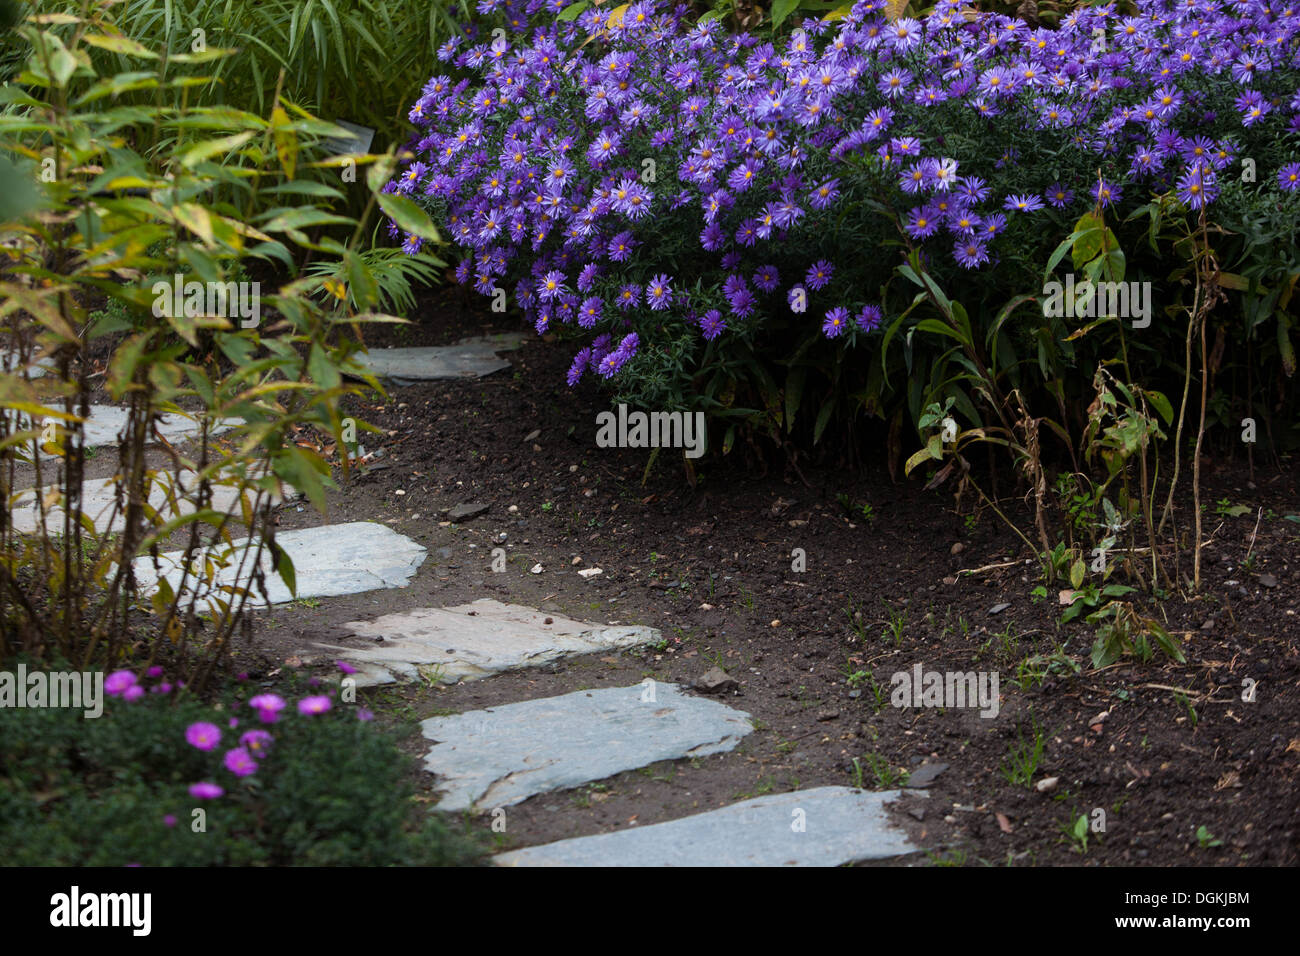 Aster fiori in un giardino, l'autunno, il percorso Foto Stock